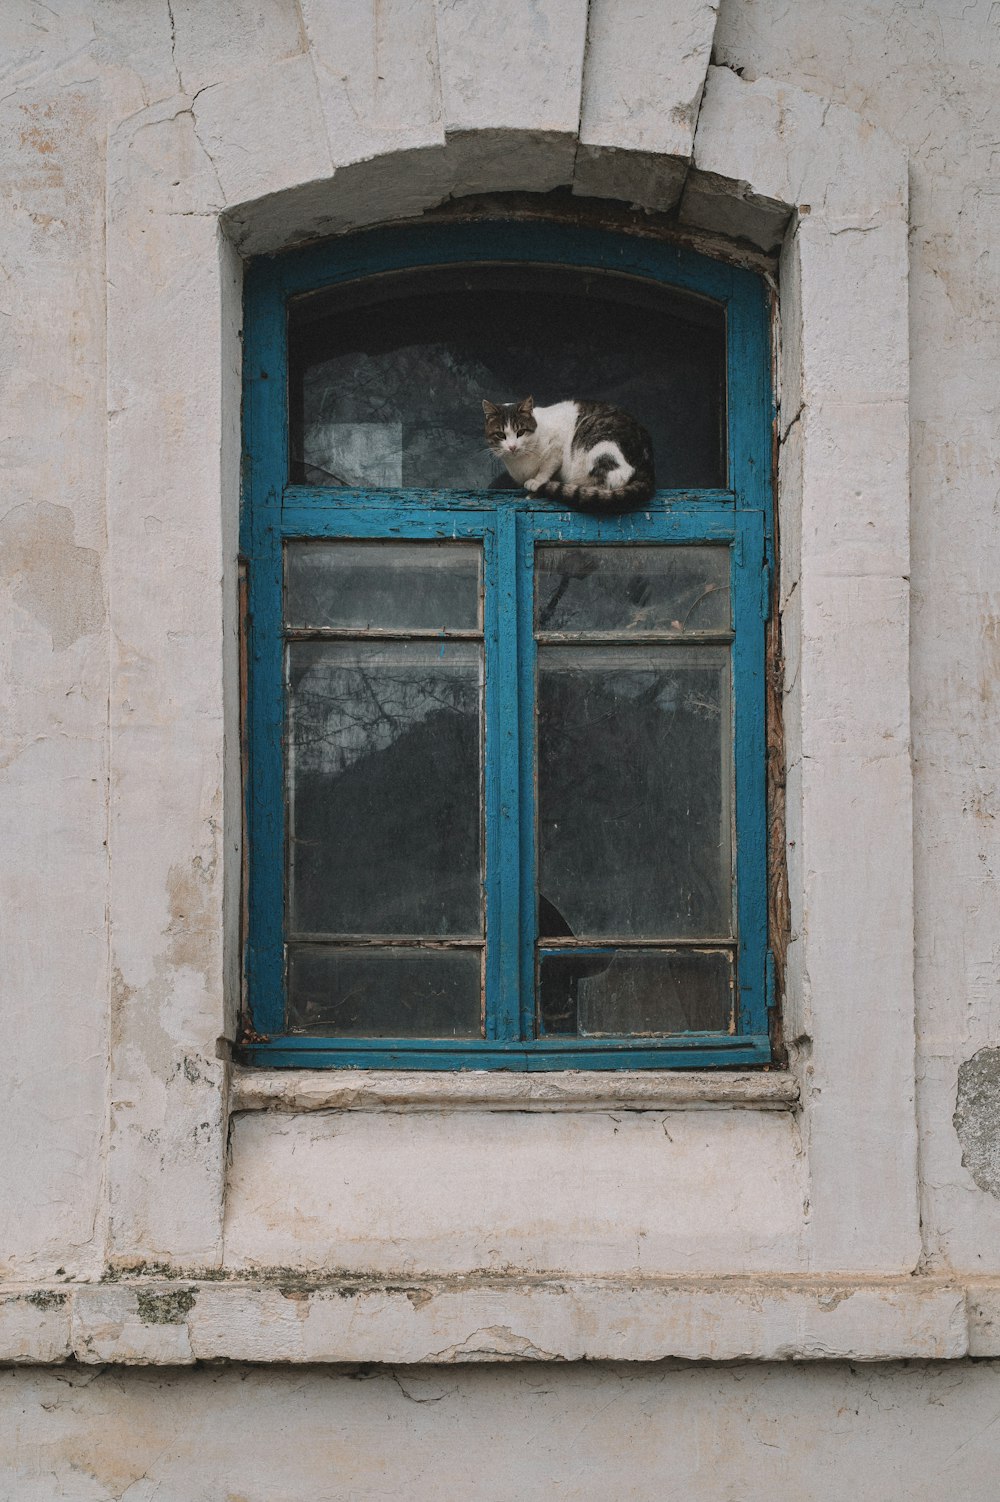 Eine schwarz-weiße Katze sitzt auf einer Fensterbank